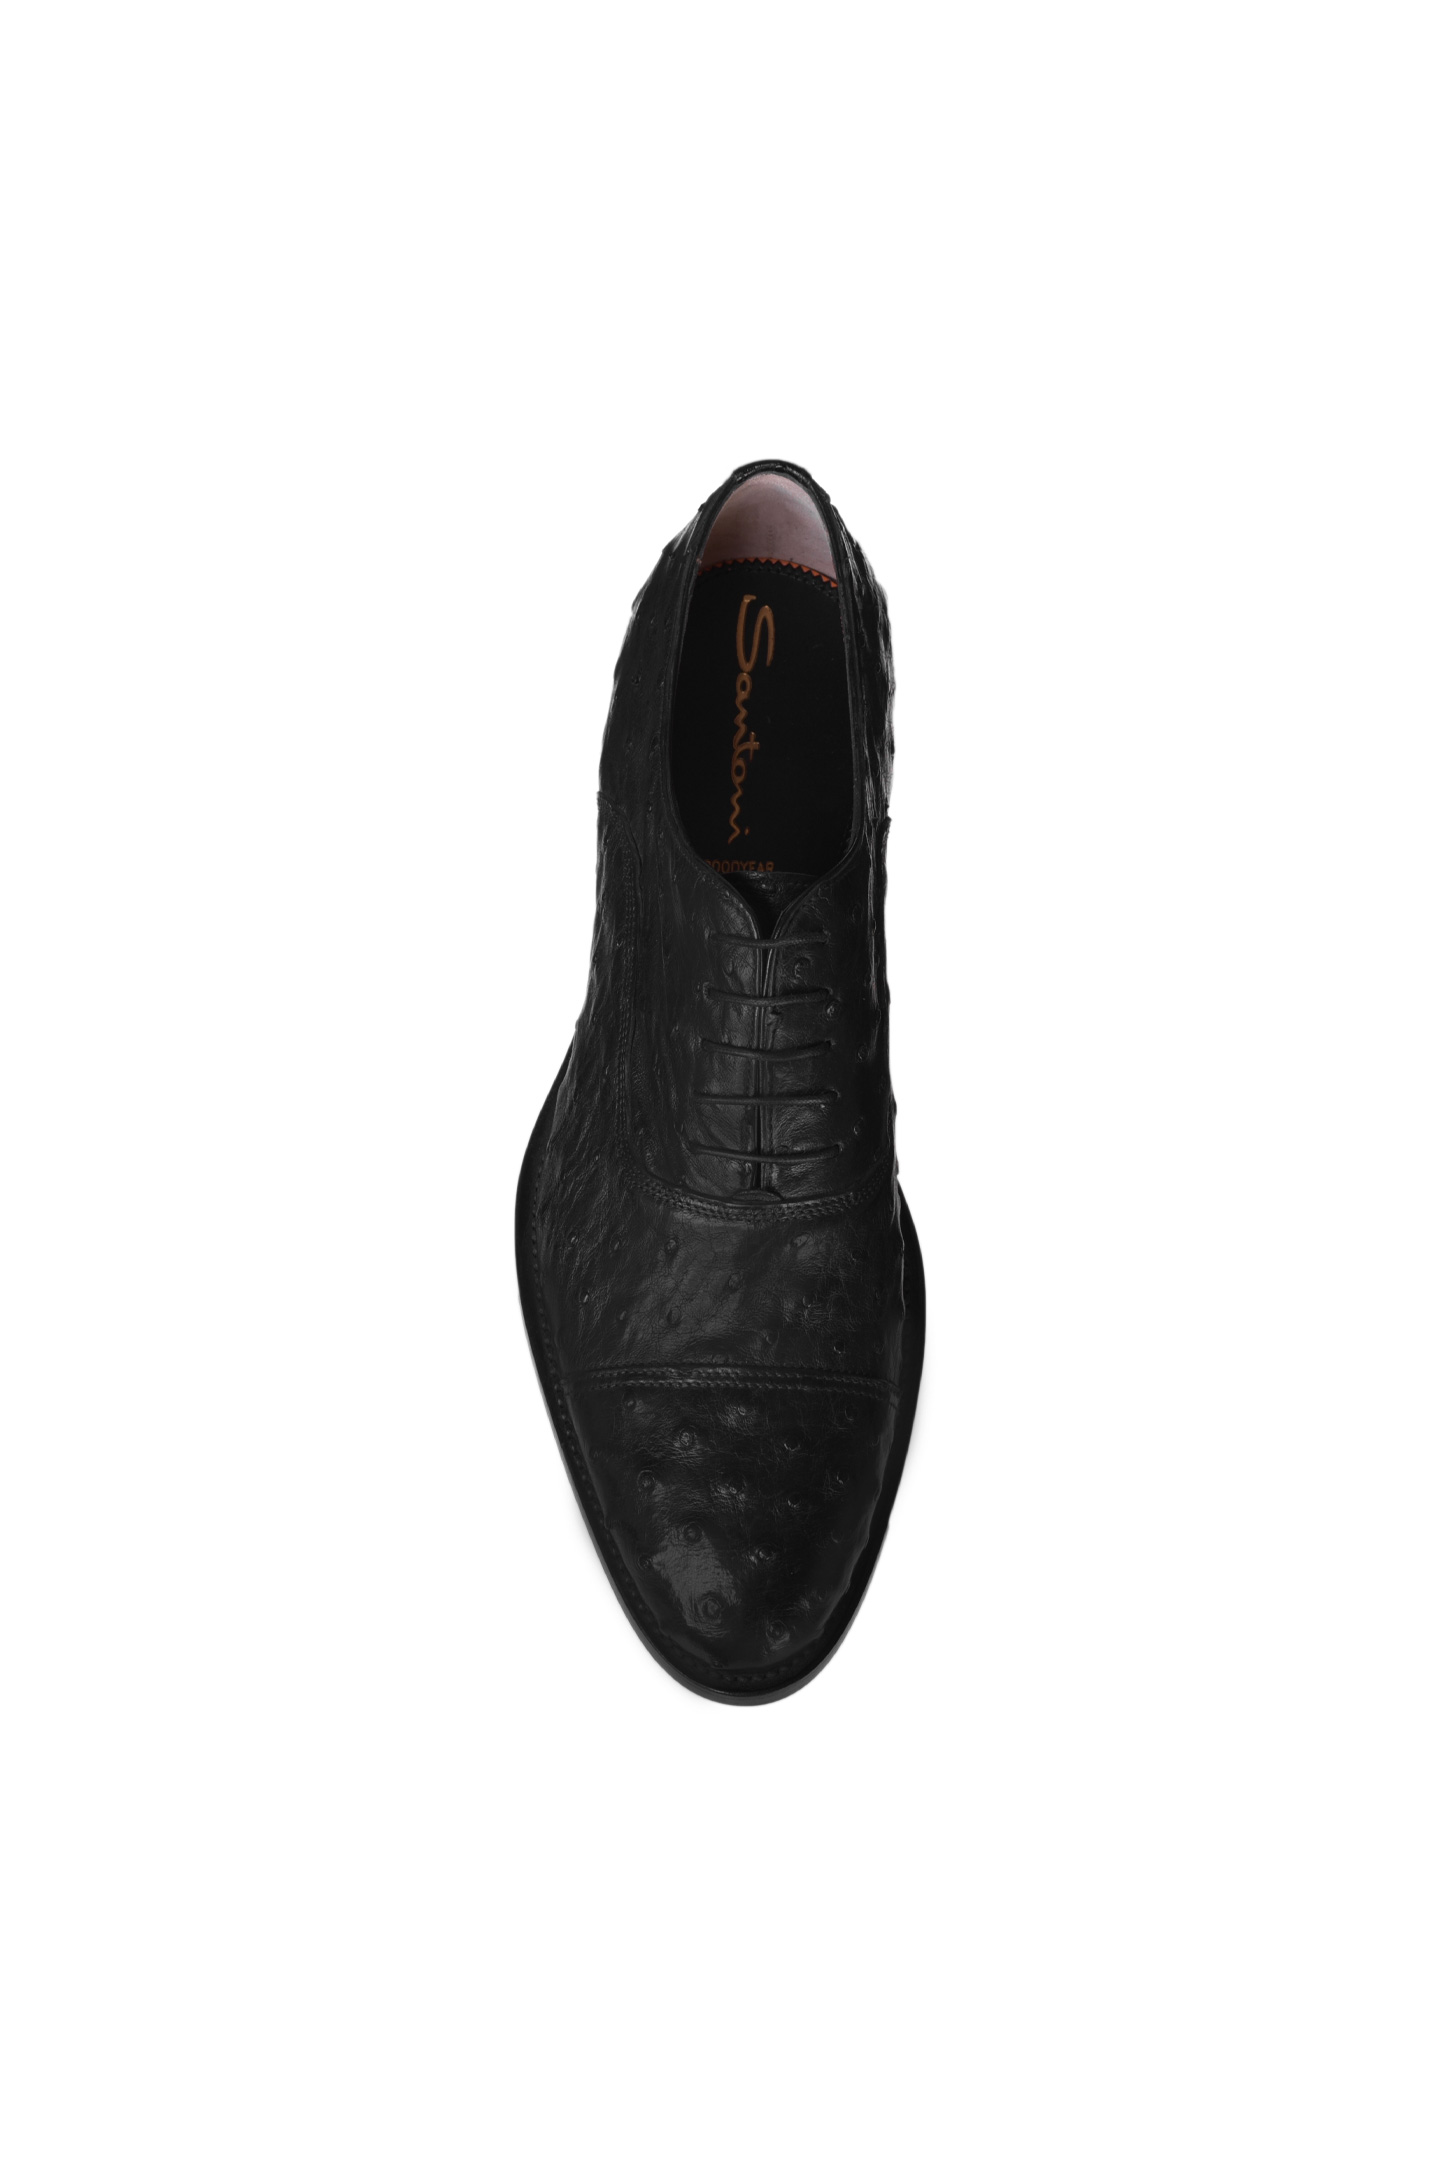 Туфли SANTONI MPWI11032UJ1ISTRN01, цвет: Черный, Мужской